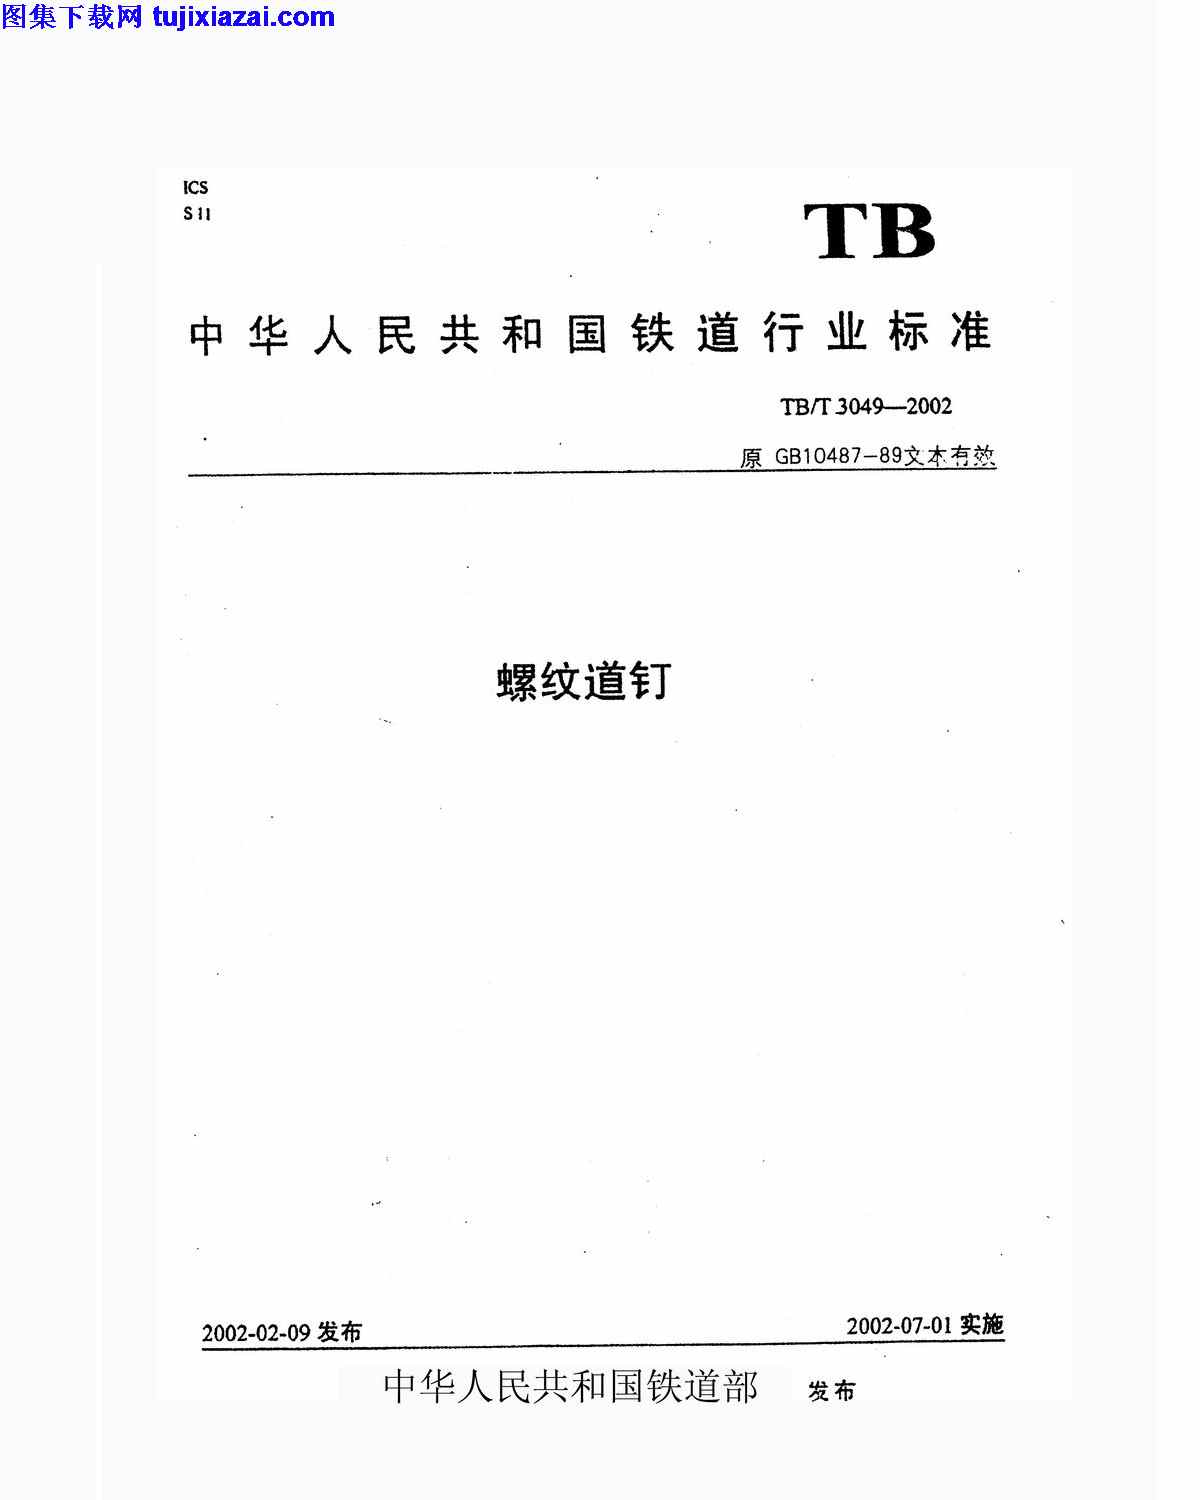 TBT3049-2002,螺纹道钉,螺纹道钉_铁路规范,铁路规范,TBT3049-2002_螺纹道钉_铁路规范.pdf